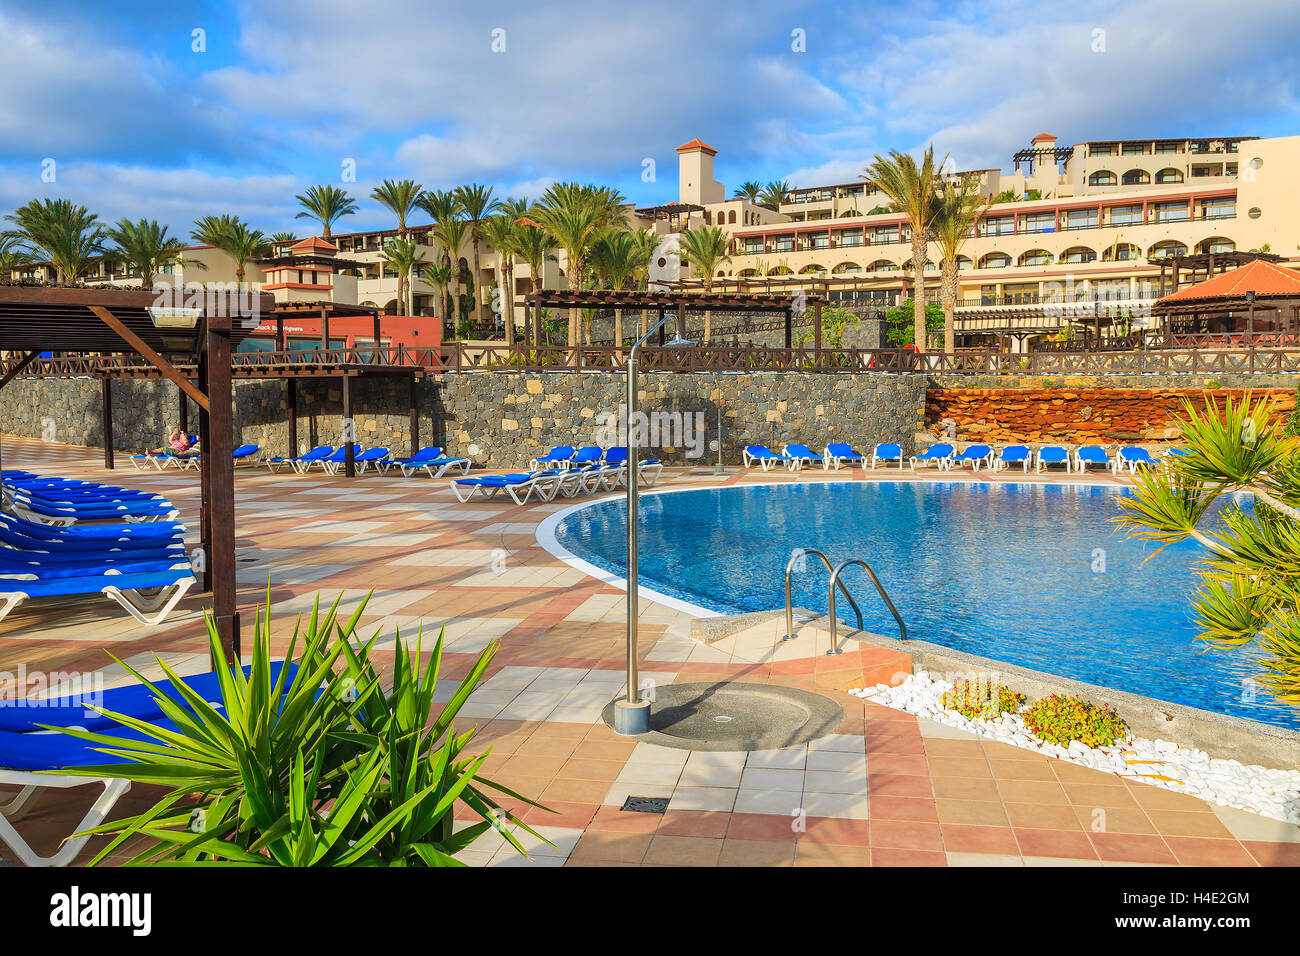 MORRO Jable Fuerteventura - 6 FEB 2014: piscina di un hotel di lusso Barcelo Jandia Mar nella città di Morro Jable. Questa è una popolare meta di vacanza per i turisti sull isola di Fuerteventura. Foto Stock